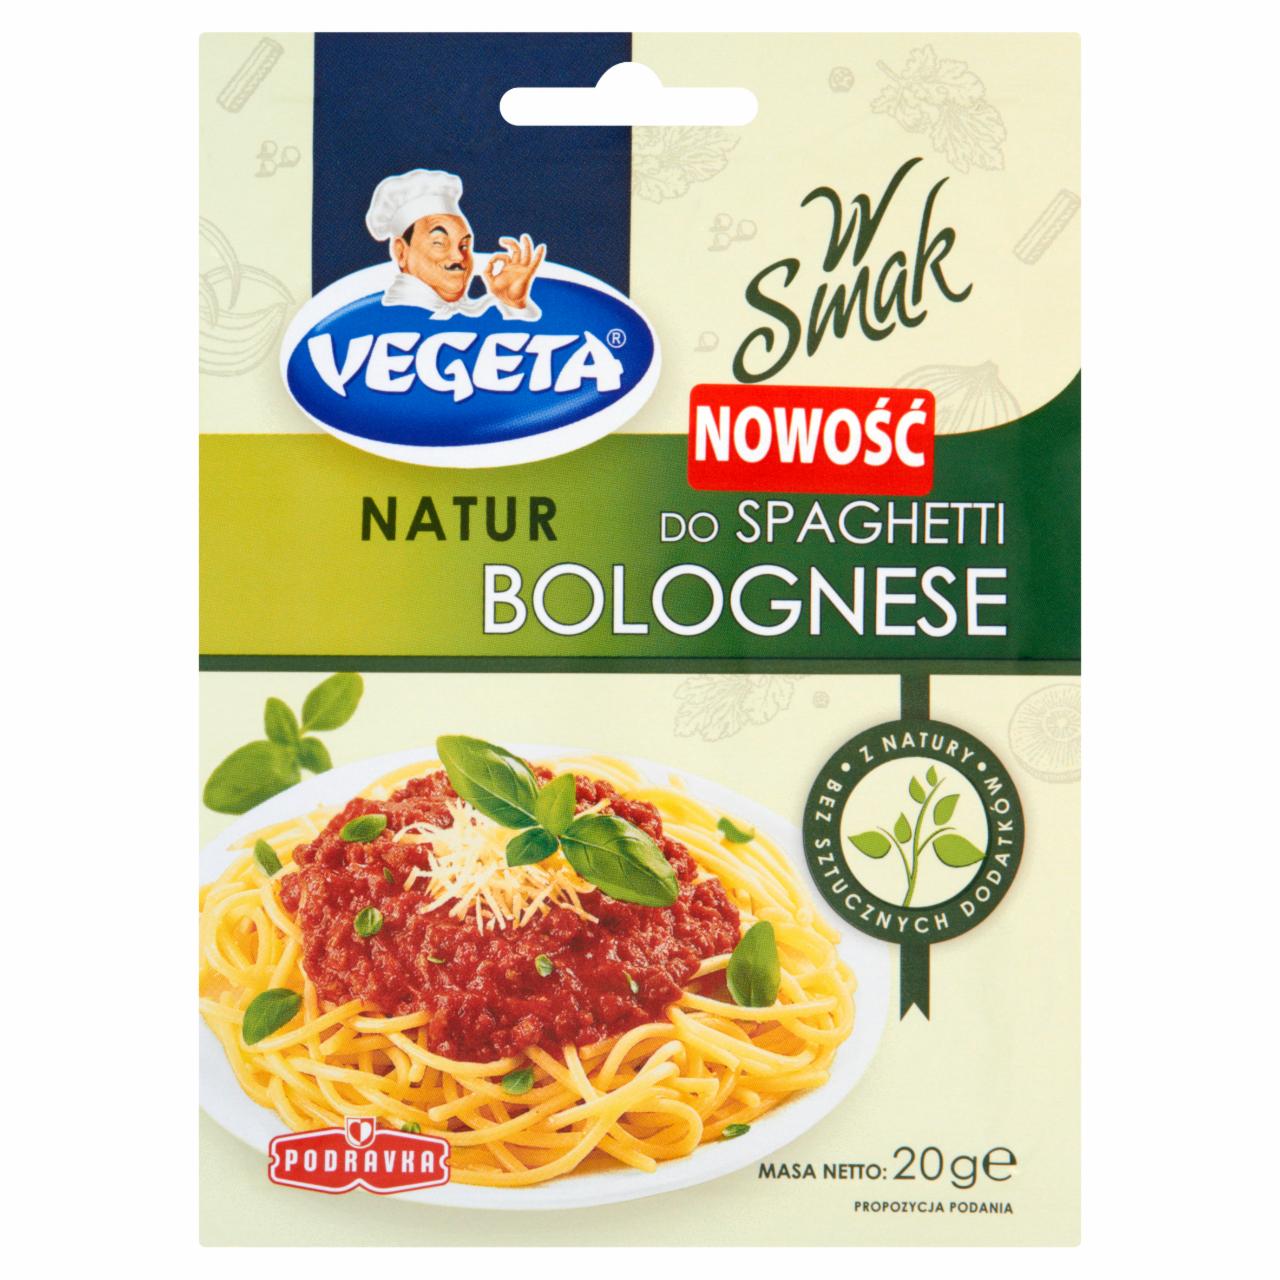 Zdjęcia - Vegeta Natur Do spaghetti bolognese Przyprawa 20 g